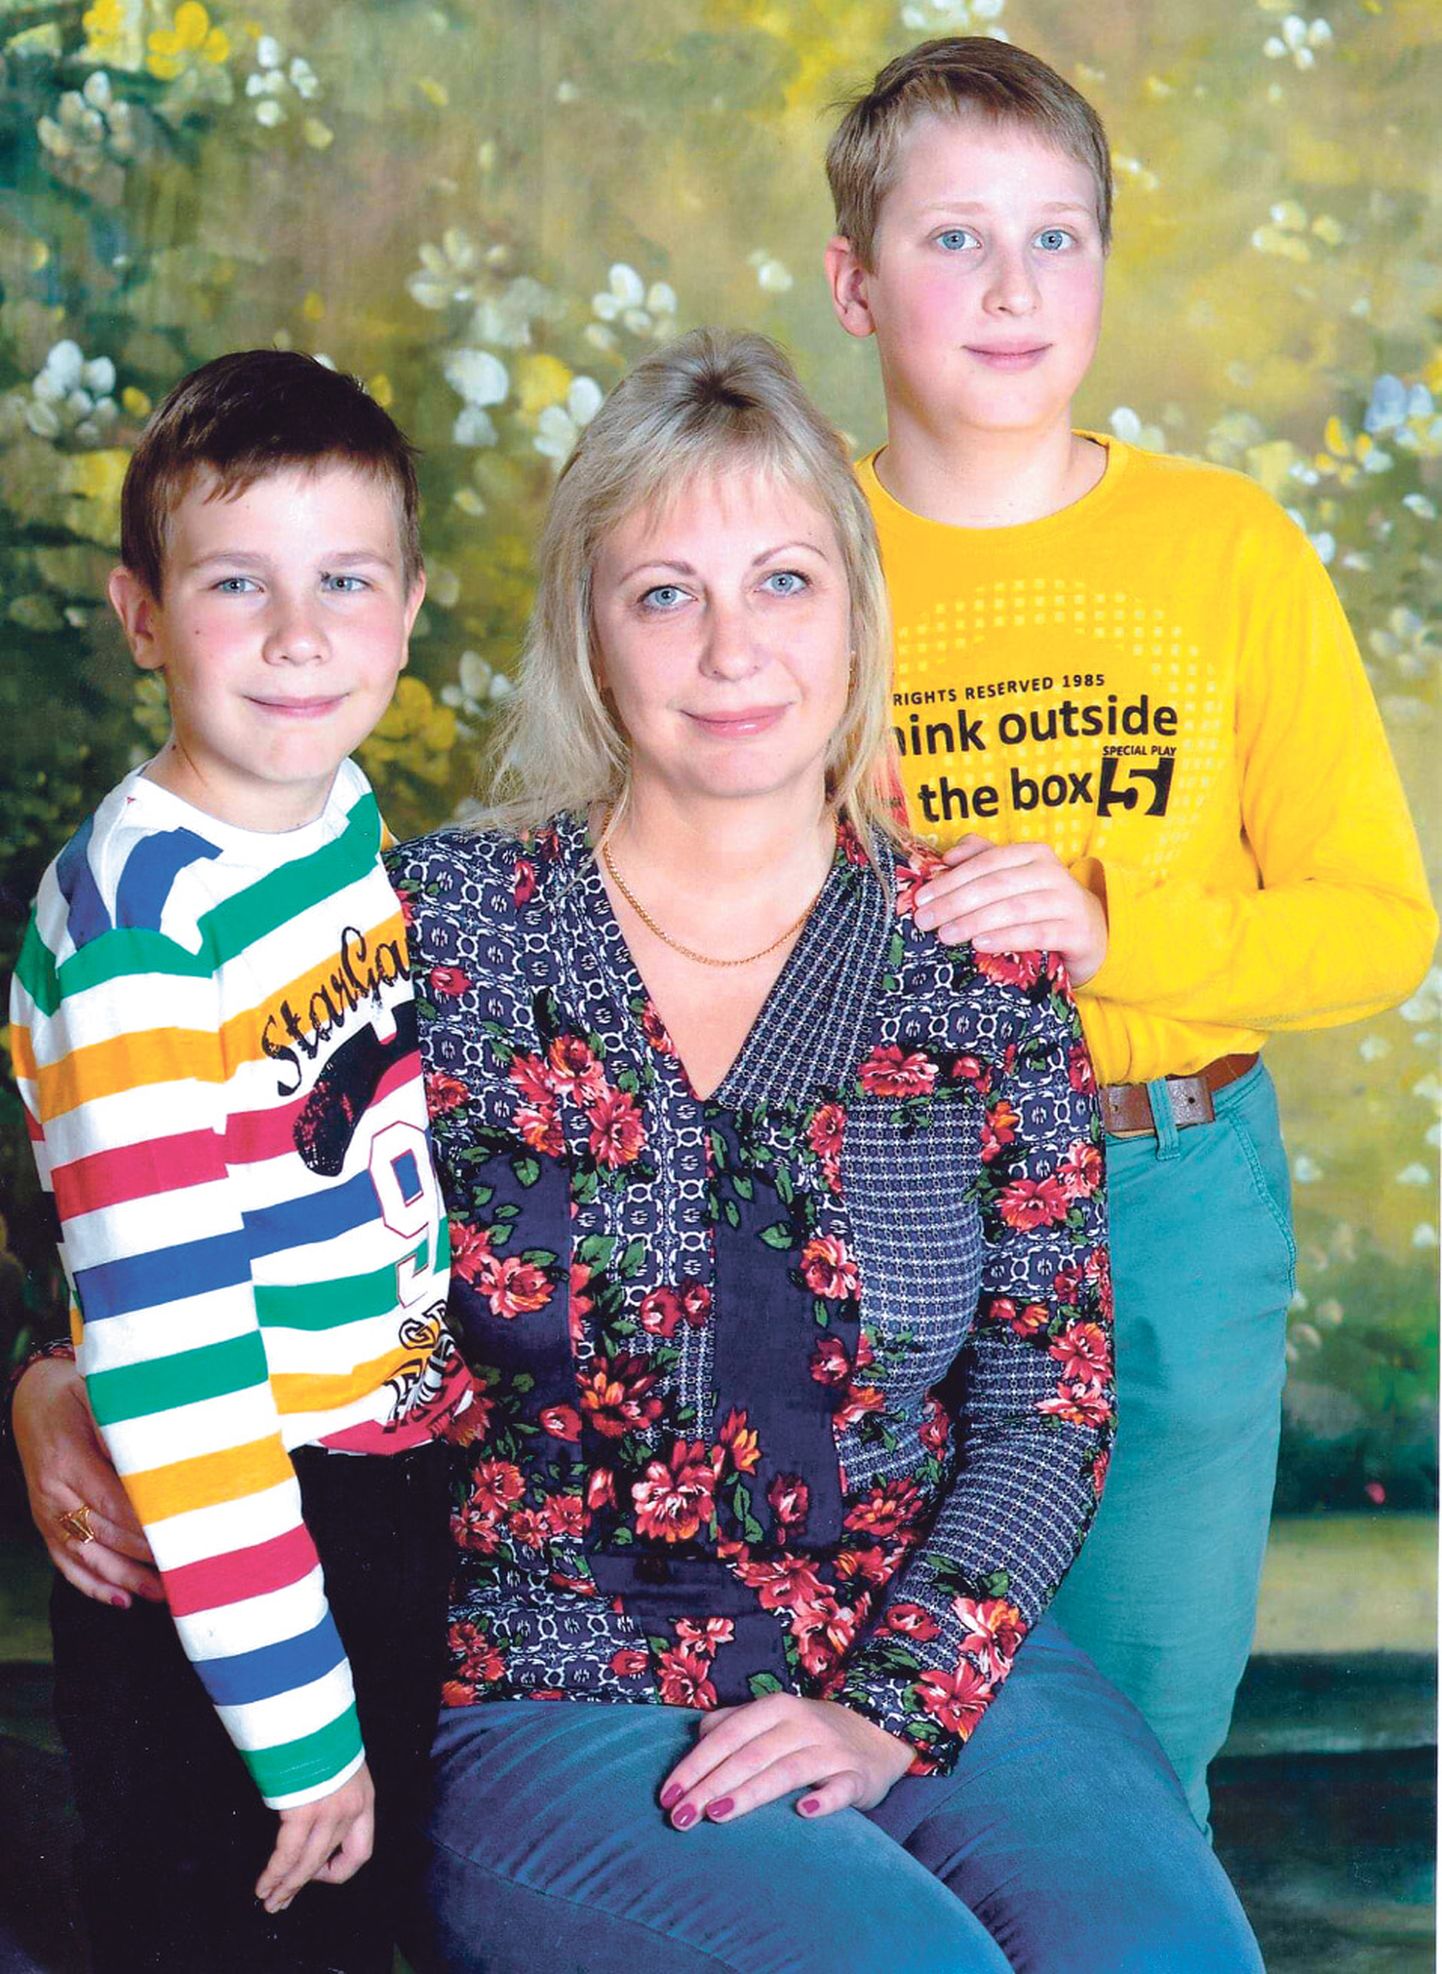 Kohtla-Järve aasta ema 2019 Olga Portnova usub, et heade laste kasvatamise saladus peitub laste usaldamises ja nende valikute austamises. Ning põhjust oma poegade üle uhke olla jagub tal küllaga.